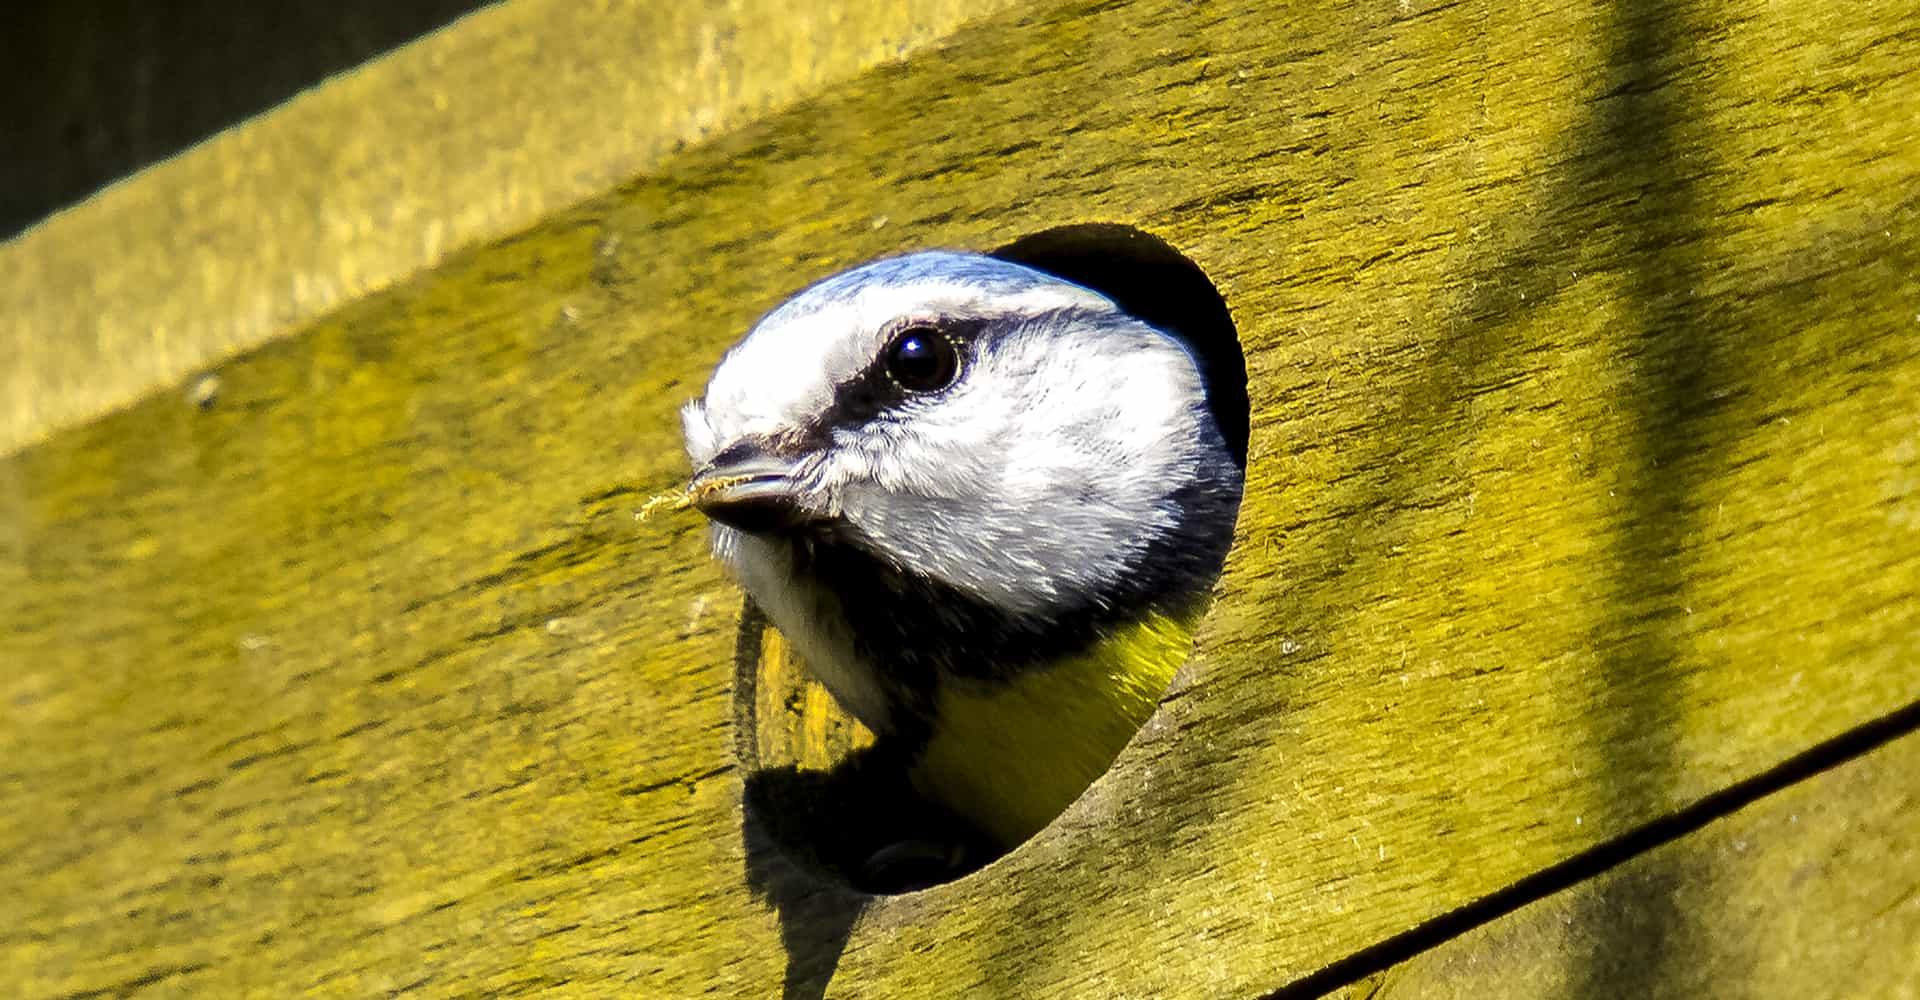 5 Best Bird Box Cameras For Close Ups (Nov 2020 Review)